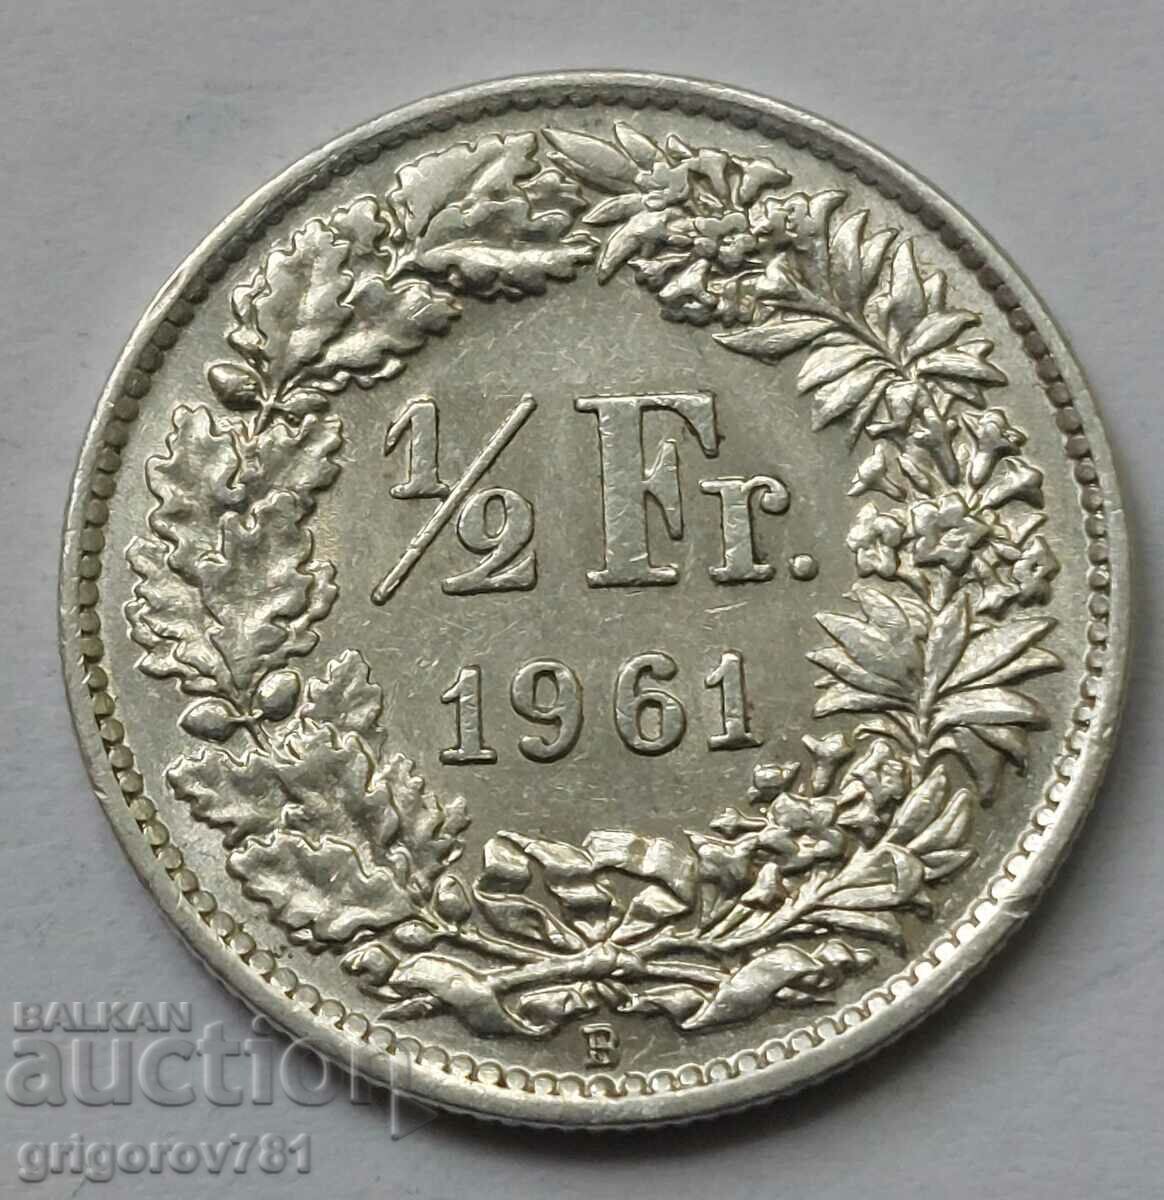 Ασημένιο φράγκο 1/2 Ελβετία 1961 Β - Ασημένιο νόμισμα #94